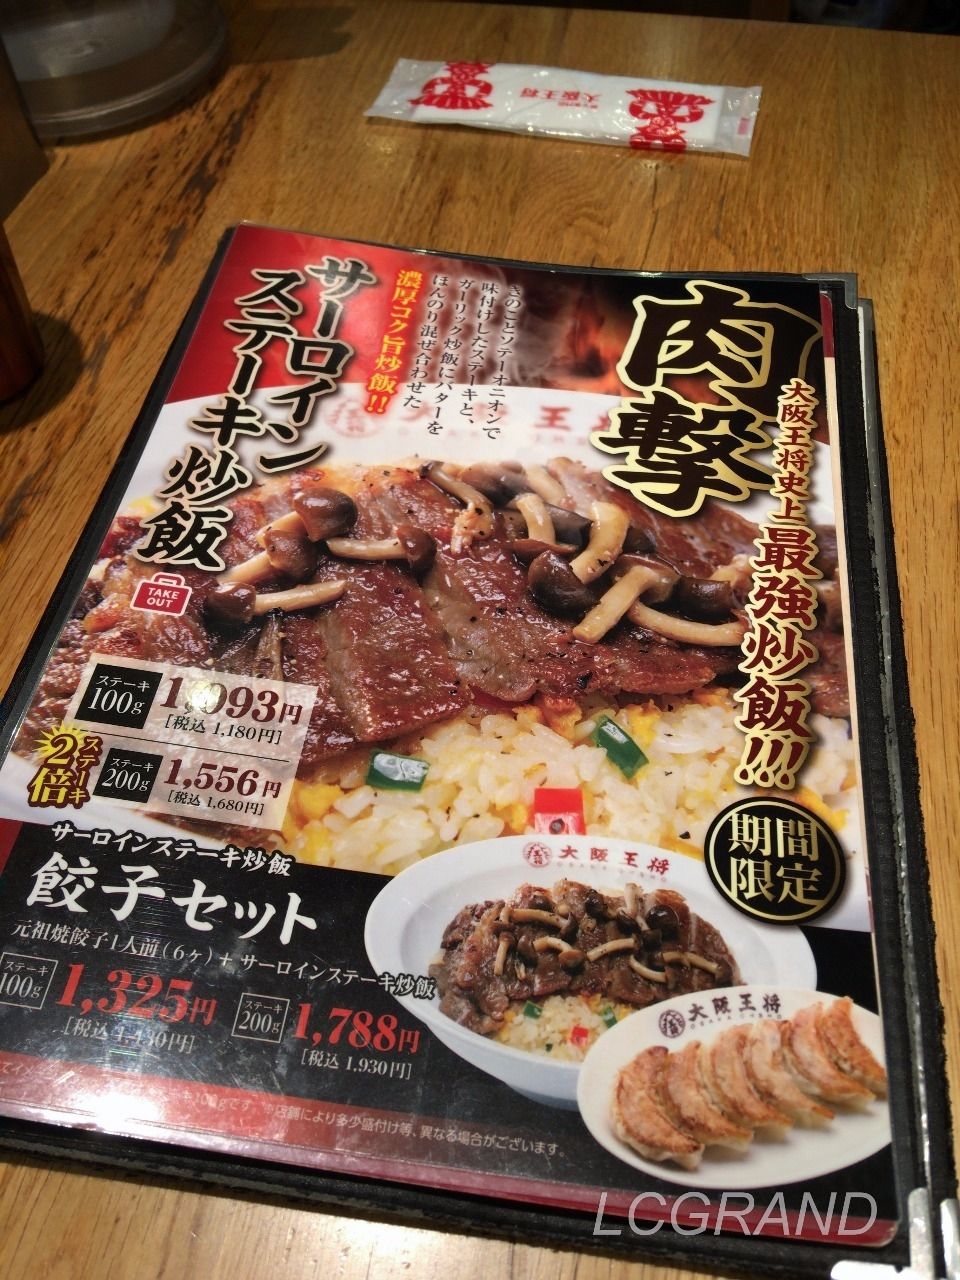 見出しに「肉撃」、そして「大阪王将史上最強炒飯」と題した食欲をそそるサーロインステーキ炒飯のメニュー表